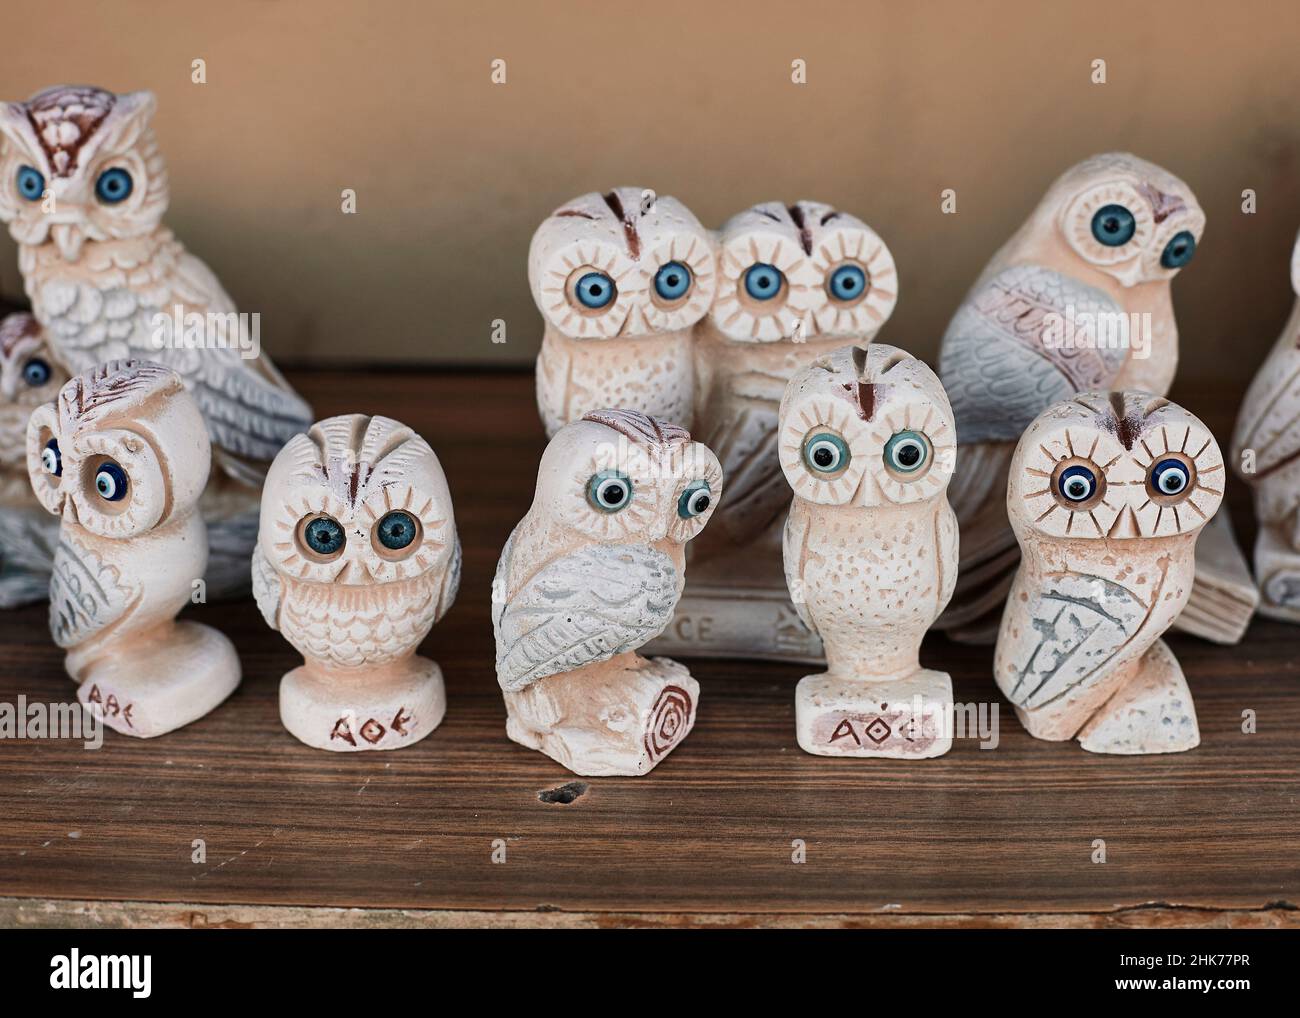 Owl, souvenir from Athens Greece Stock Photo